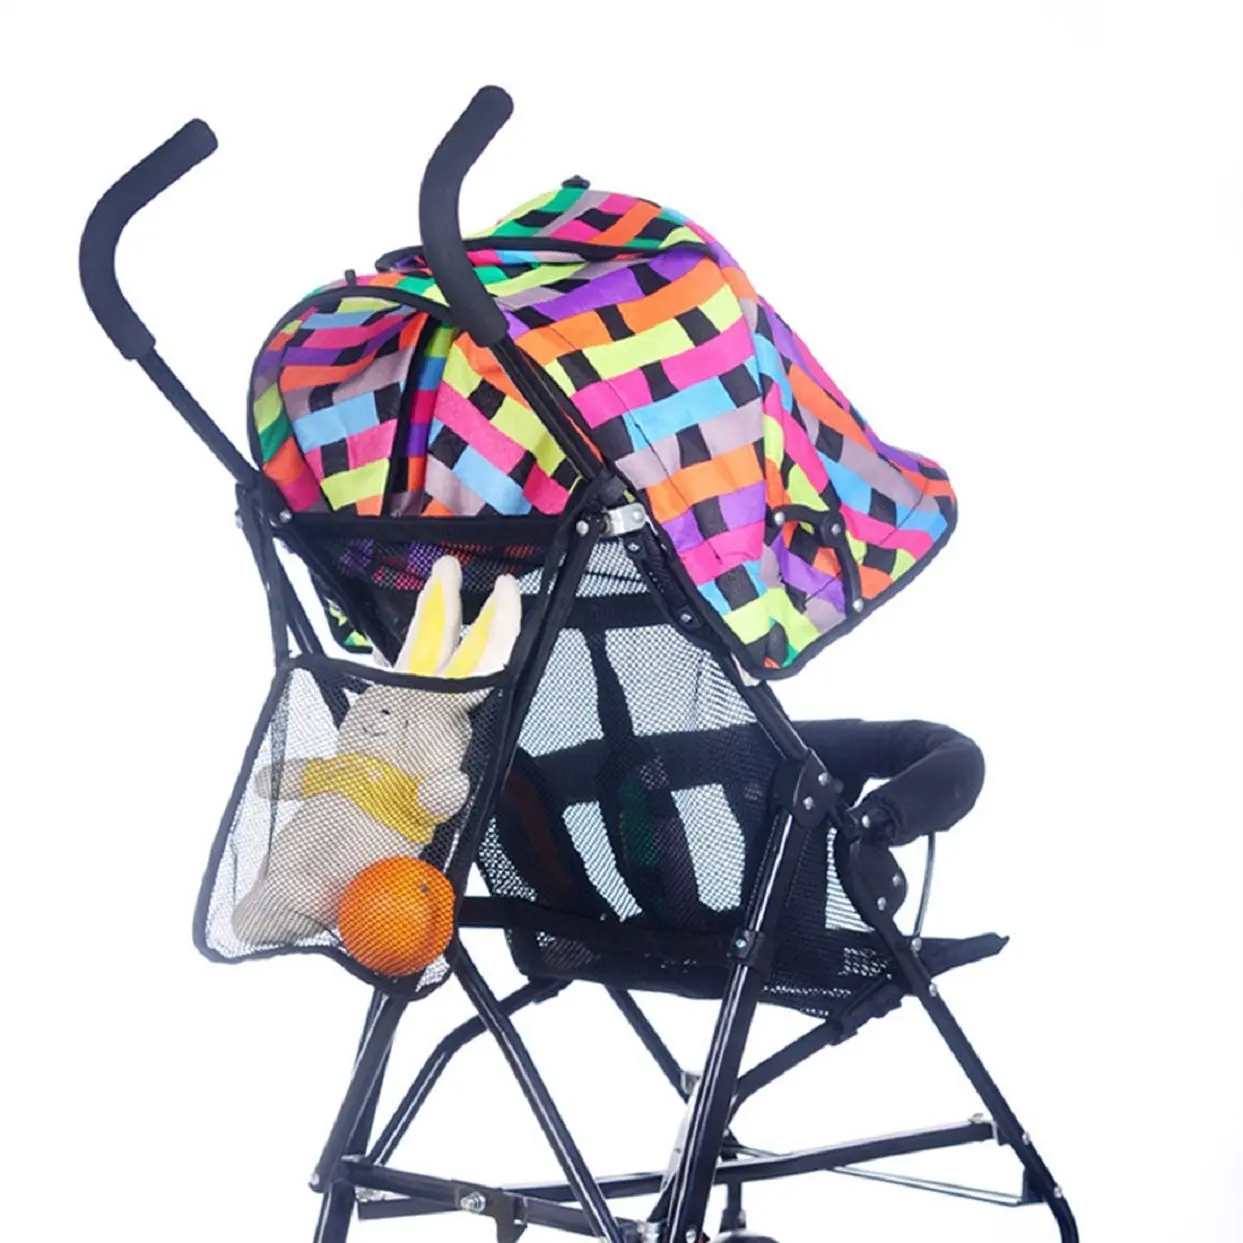 Сумка для детской коляски, большая вместительность, универсальная сумка для хранения детской коляски, удобный органайзер для подгузников, аксессуары для коляски